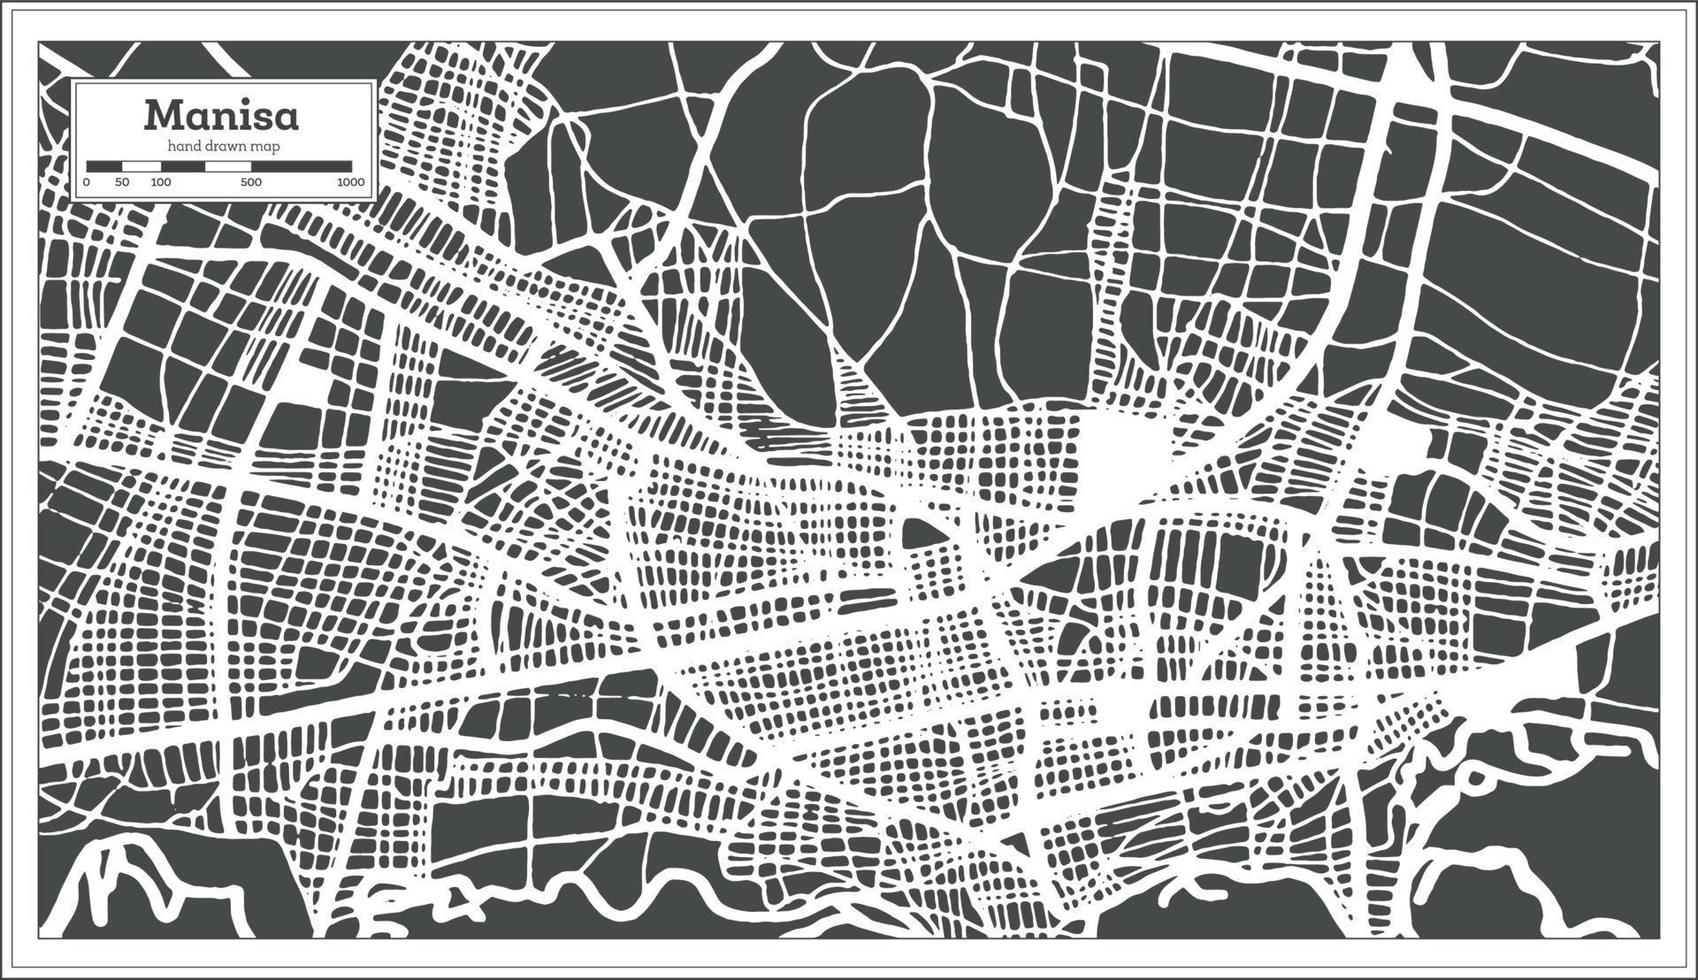 plan de la ville de manisa turquie dans un style rétro. carte muette. vecteur